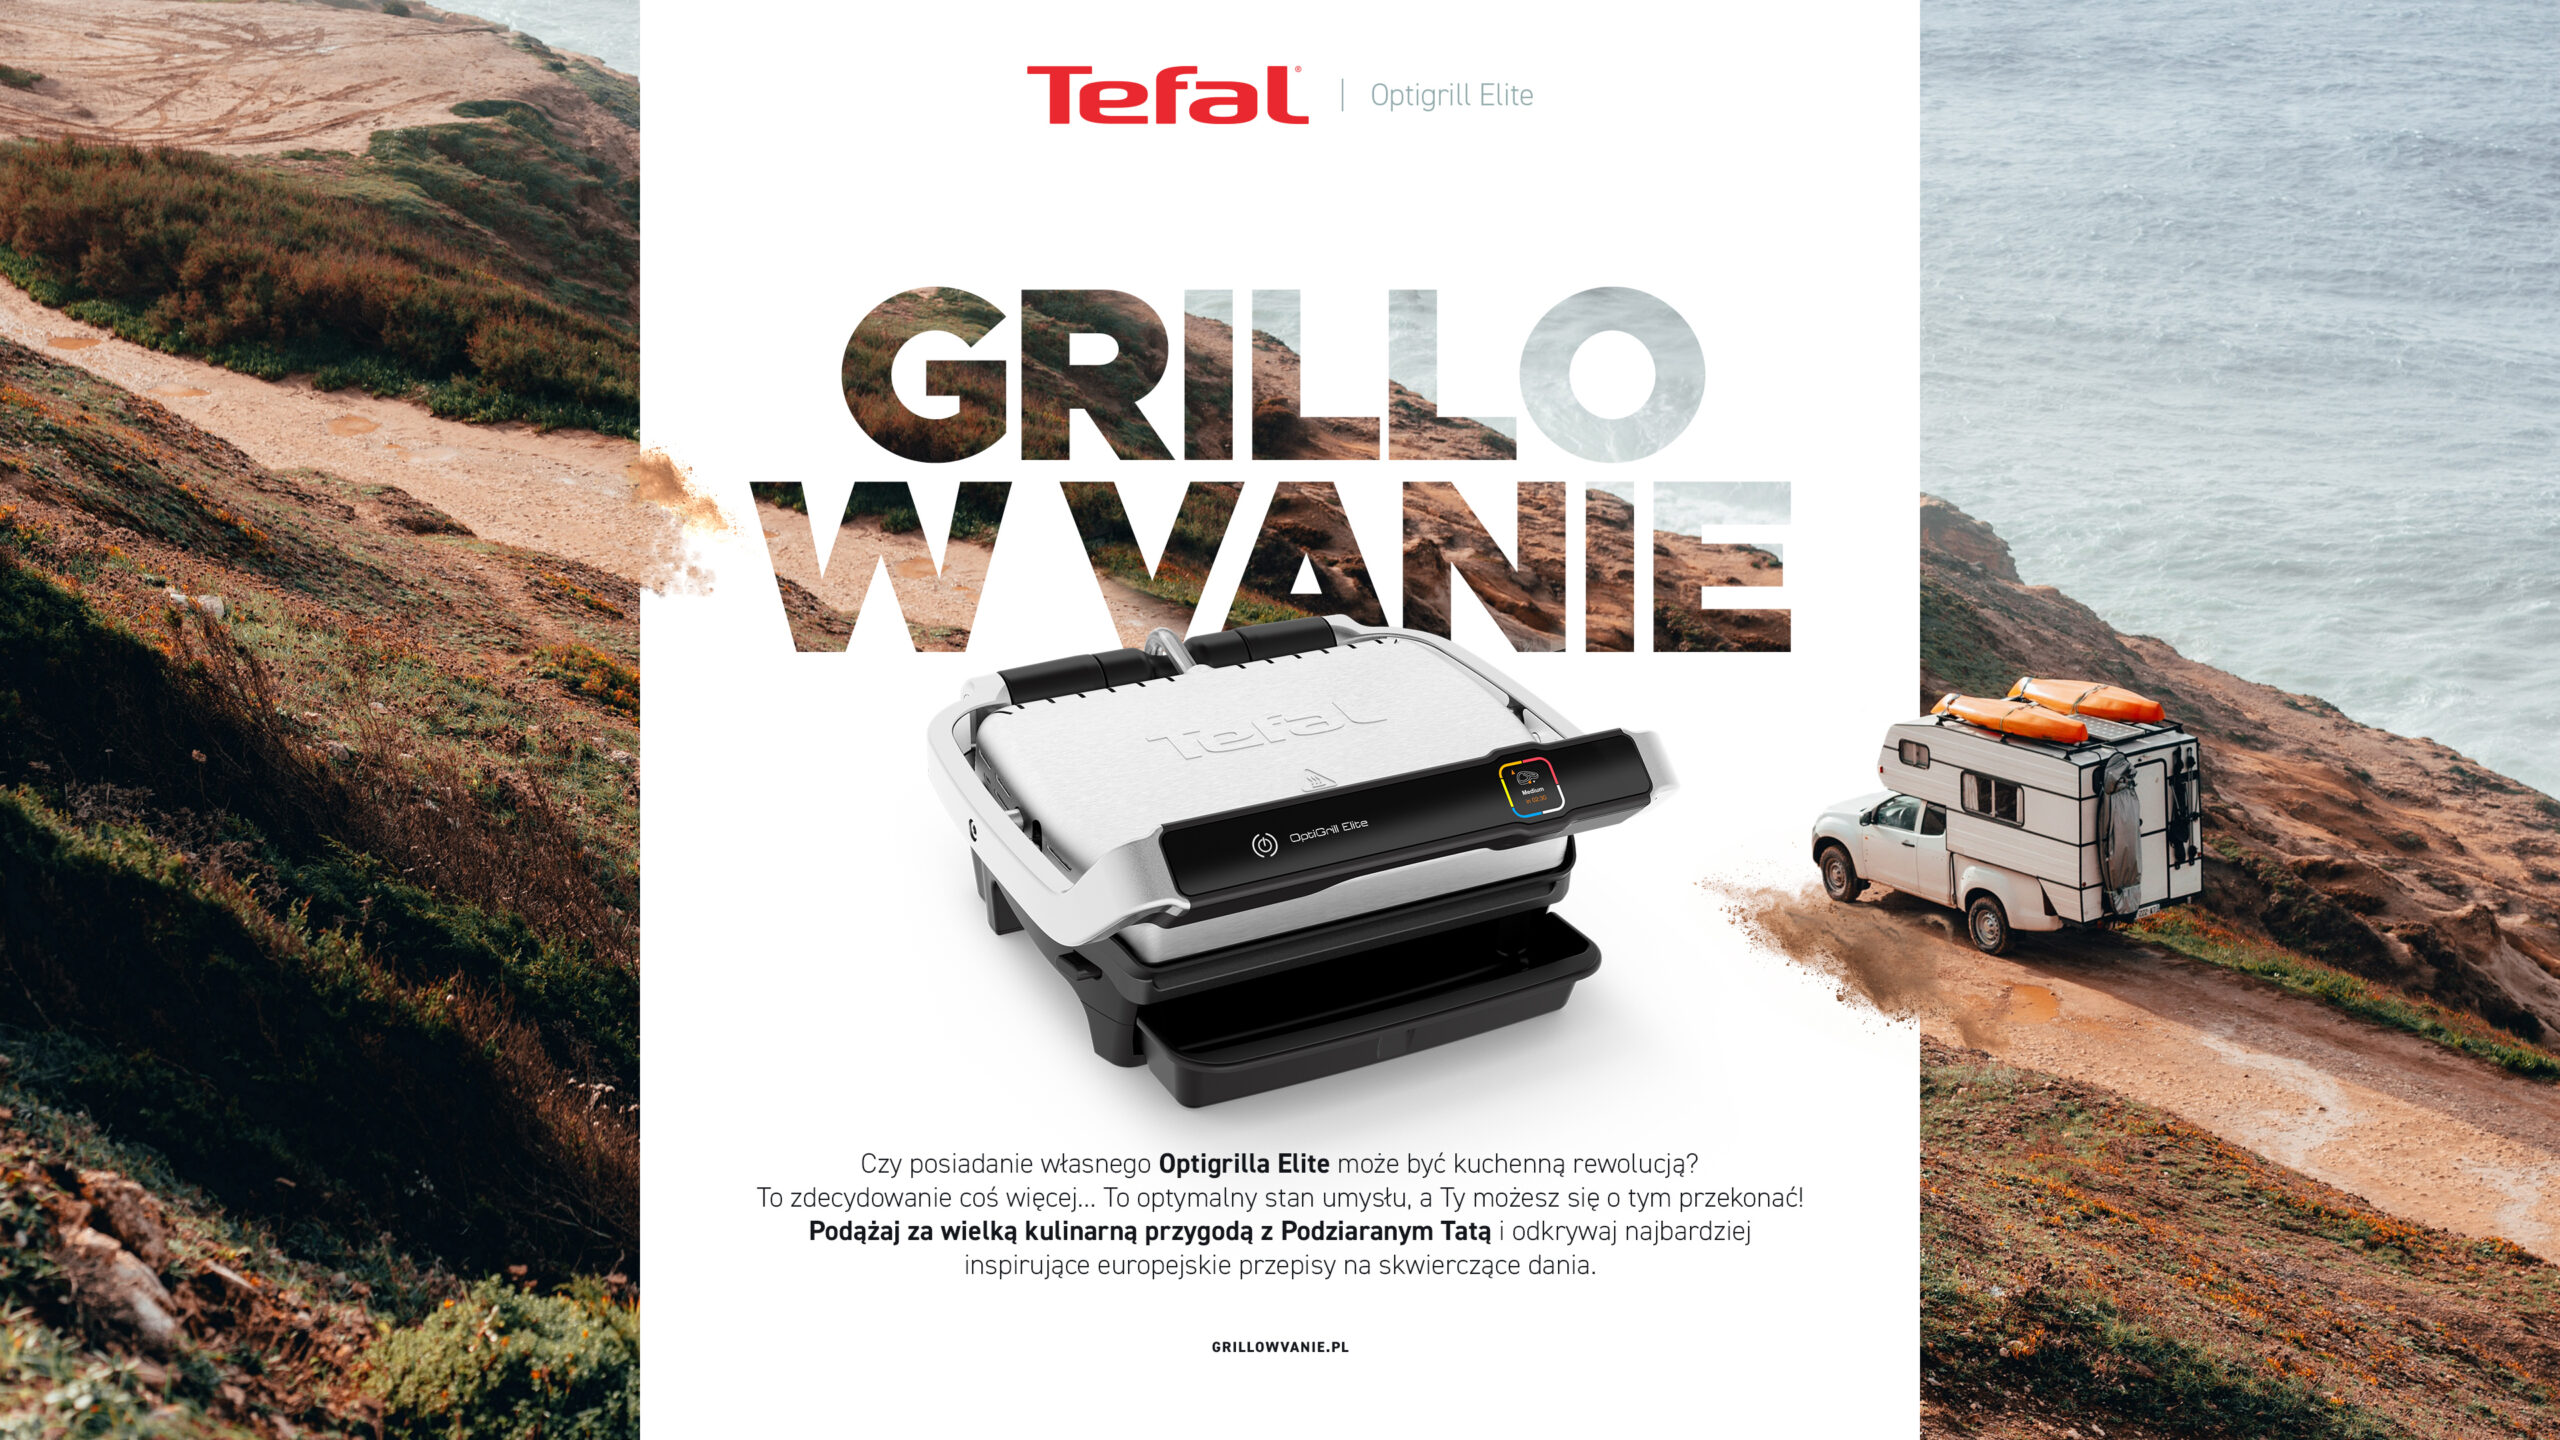 Rusza GRILLO W VANIE – inspirująca podróż po kulinarnej mapie Włochz marką Tefal i Optigrill Elite